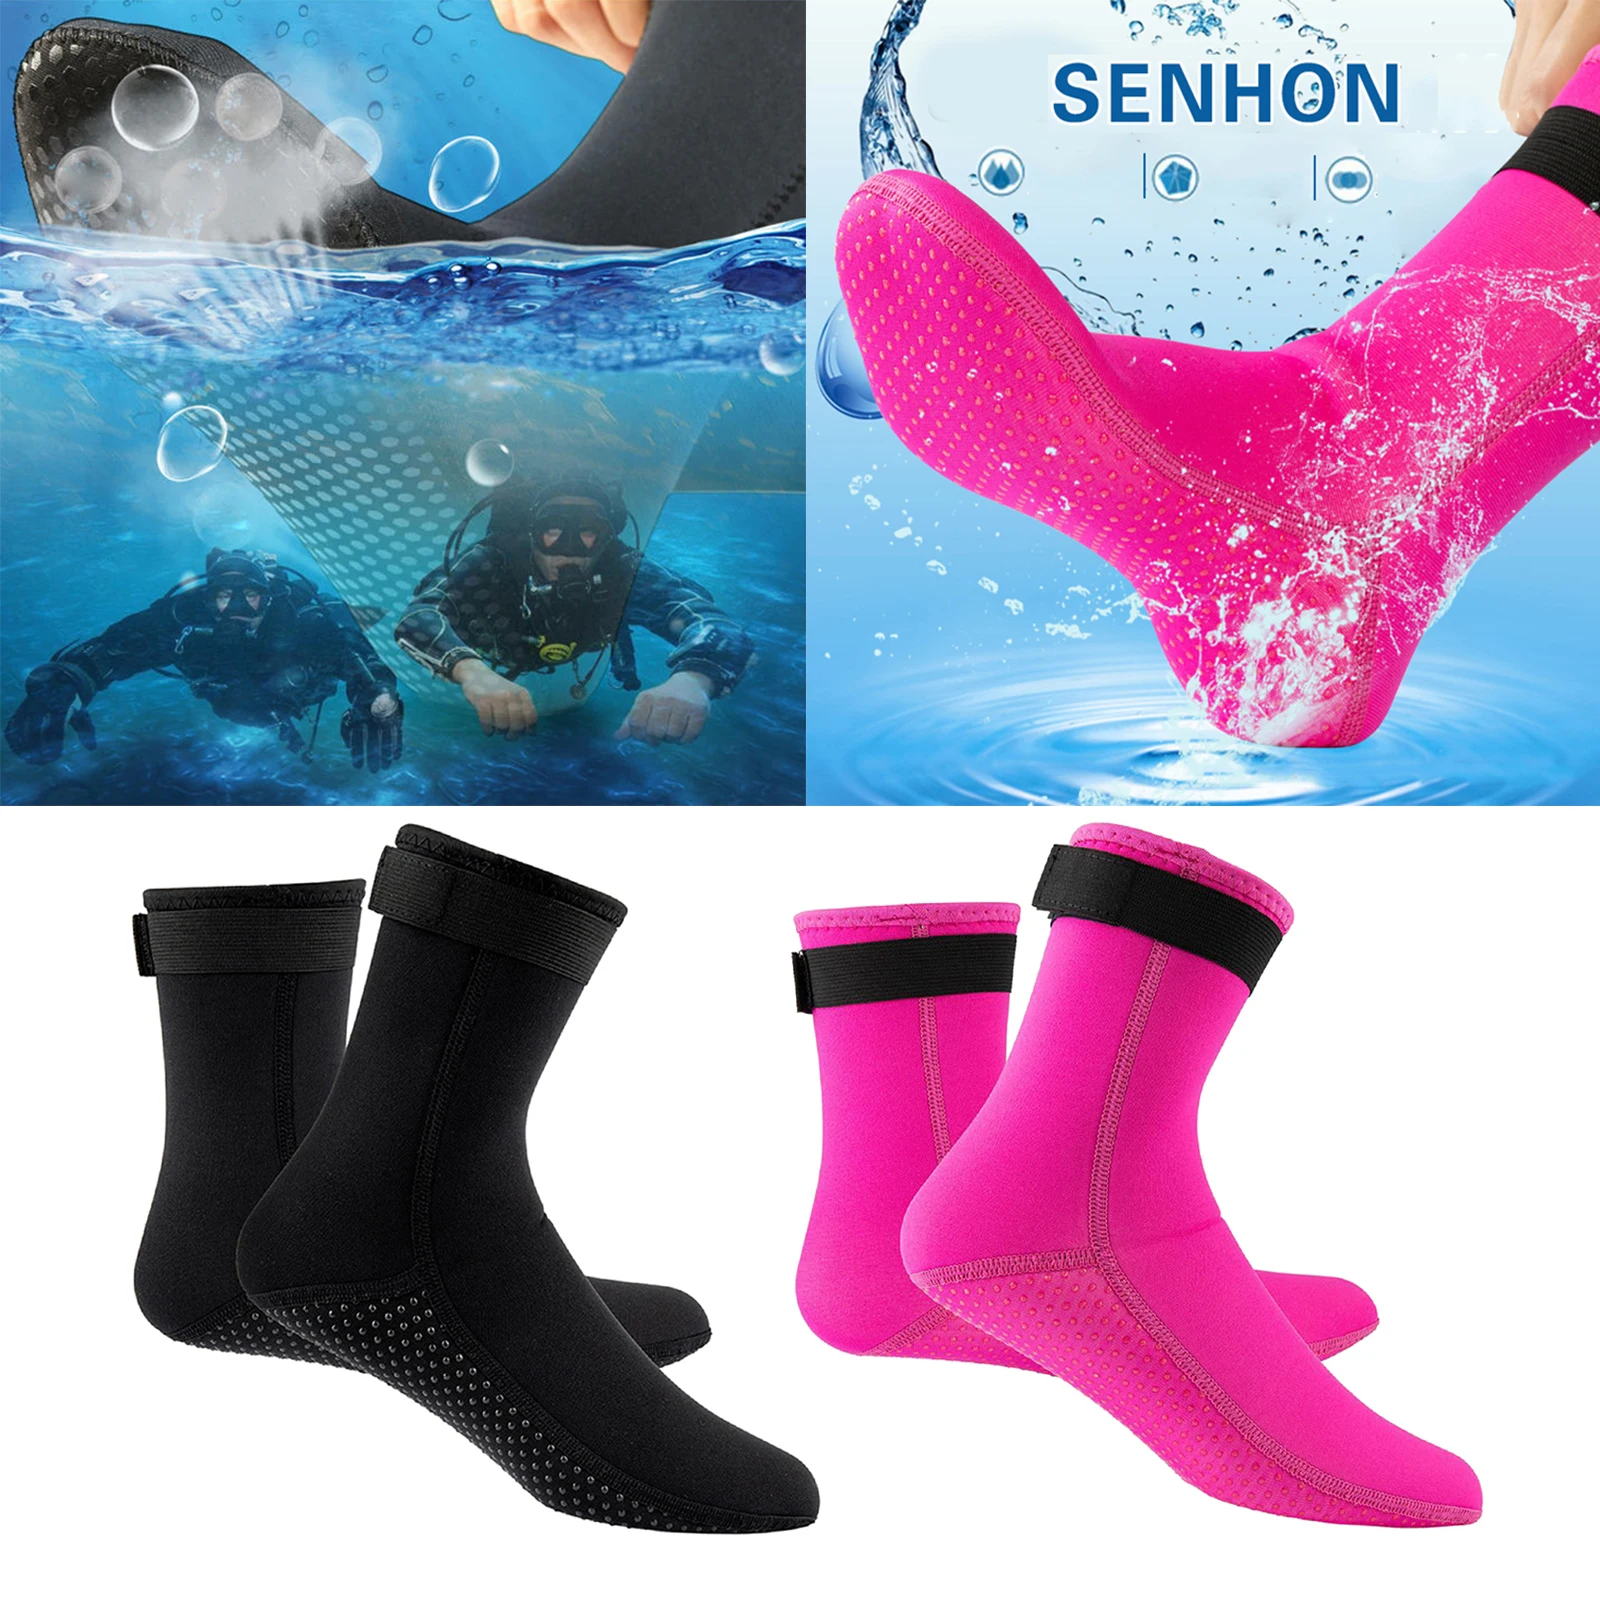 Calzino Immersioni Calzini Surf Boots Swim 3 millimetri di neoprene antiscivolo Pinne calzini per gli uomini donne immersioni subacquee Snorkeling Sport acquatico Blu XS 1 coppia 